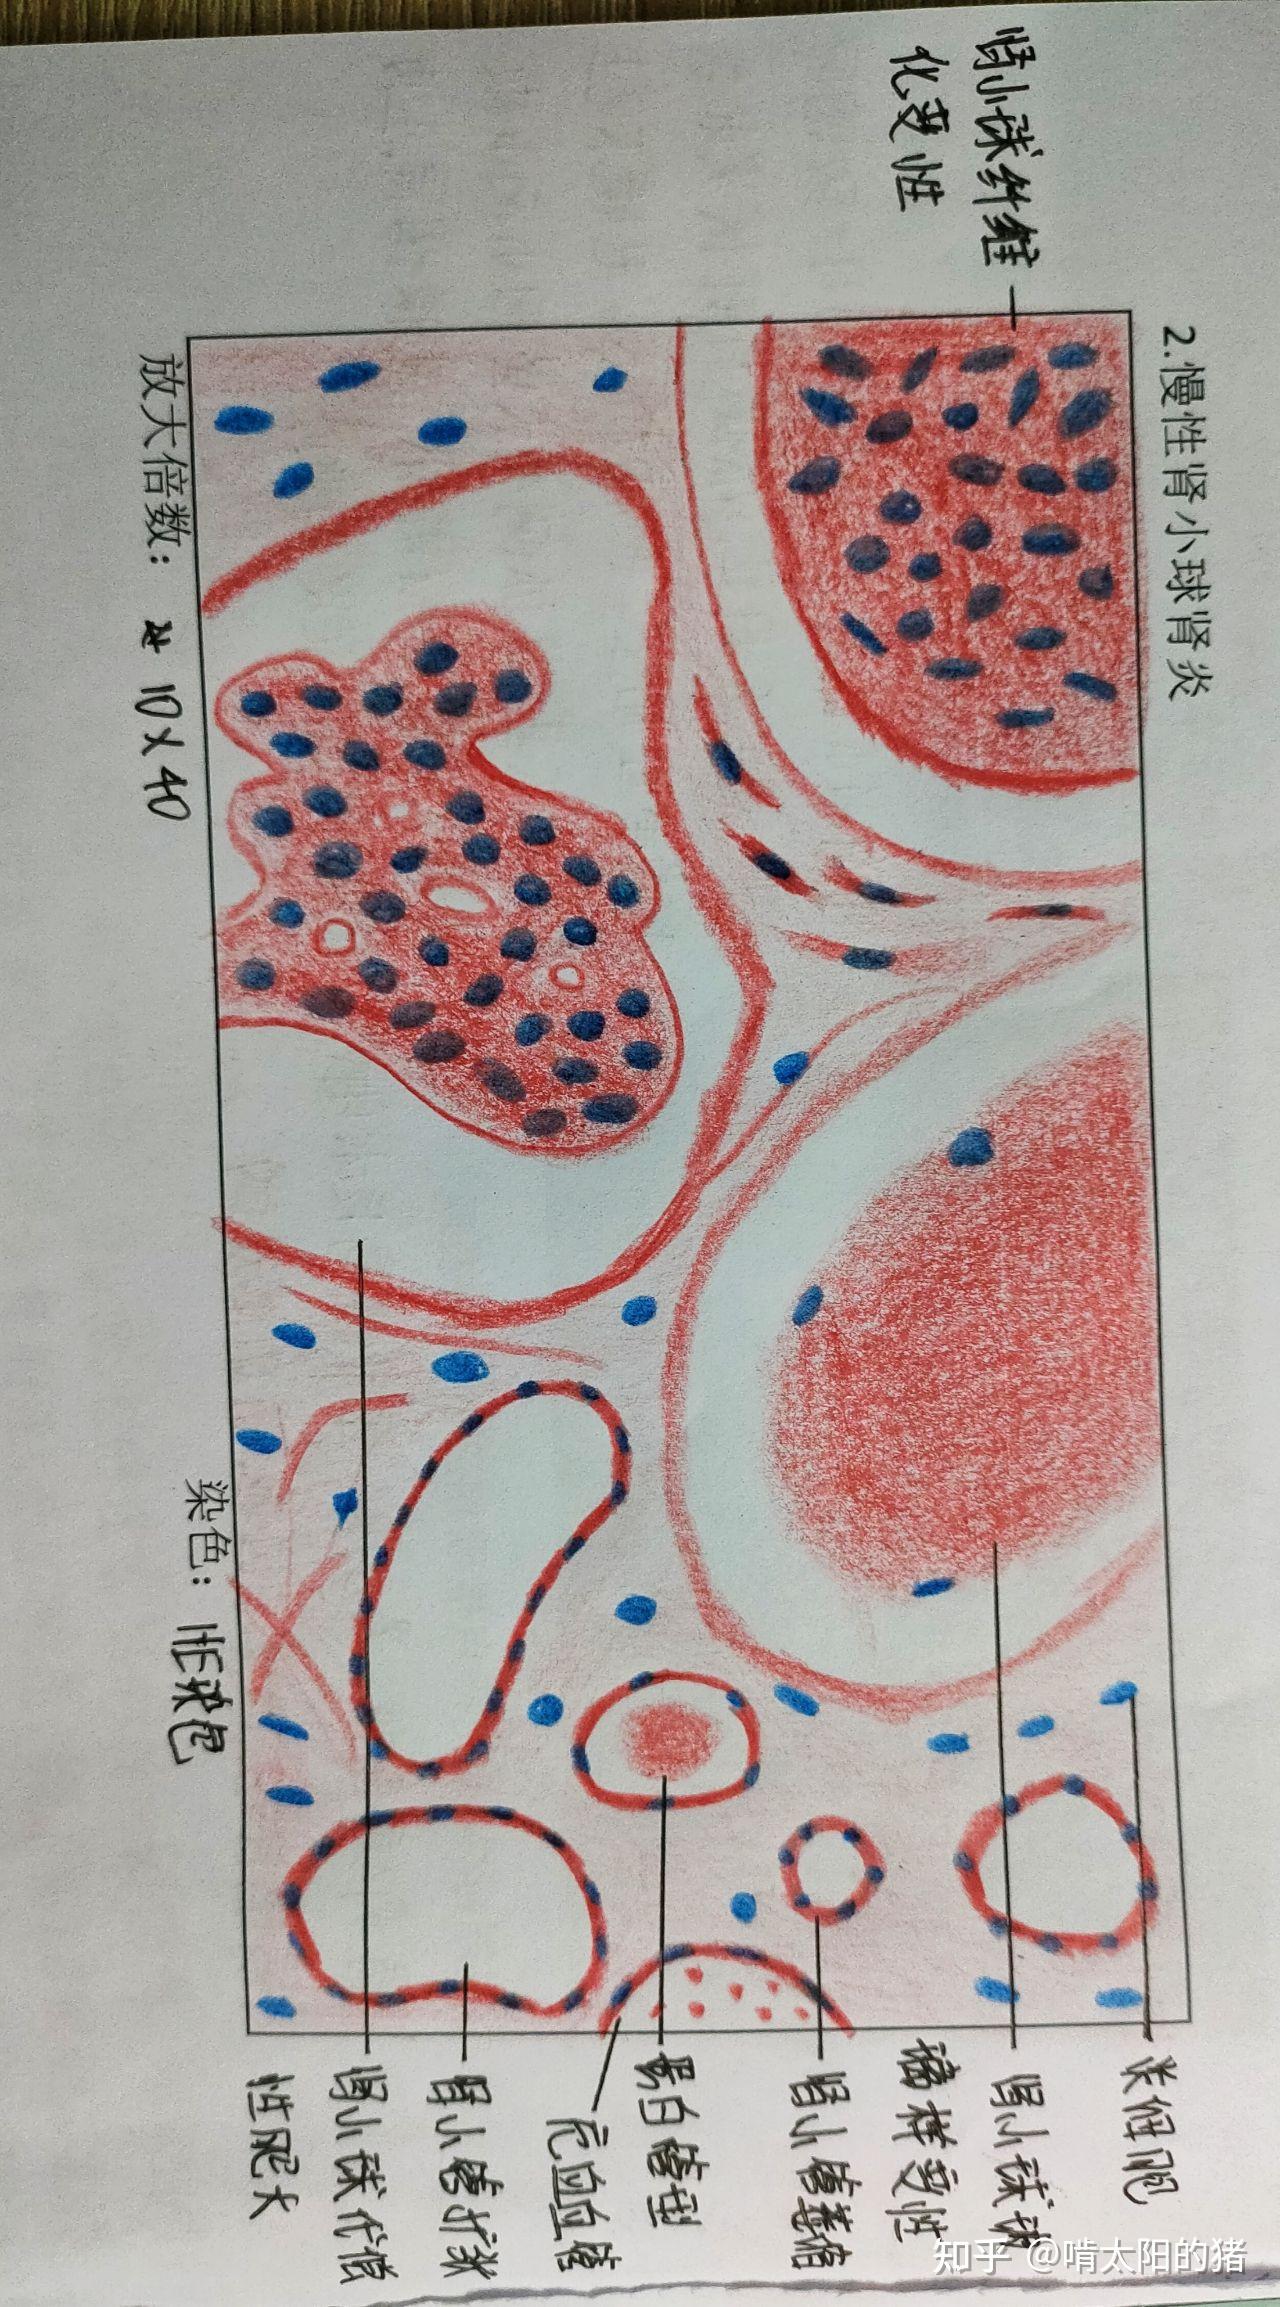 肾颗粒样变性的手绘图图片